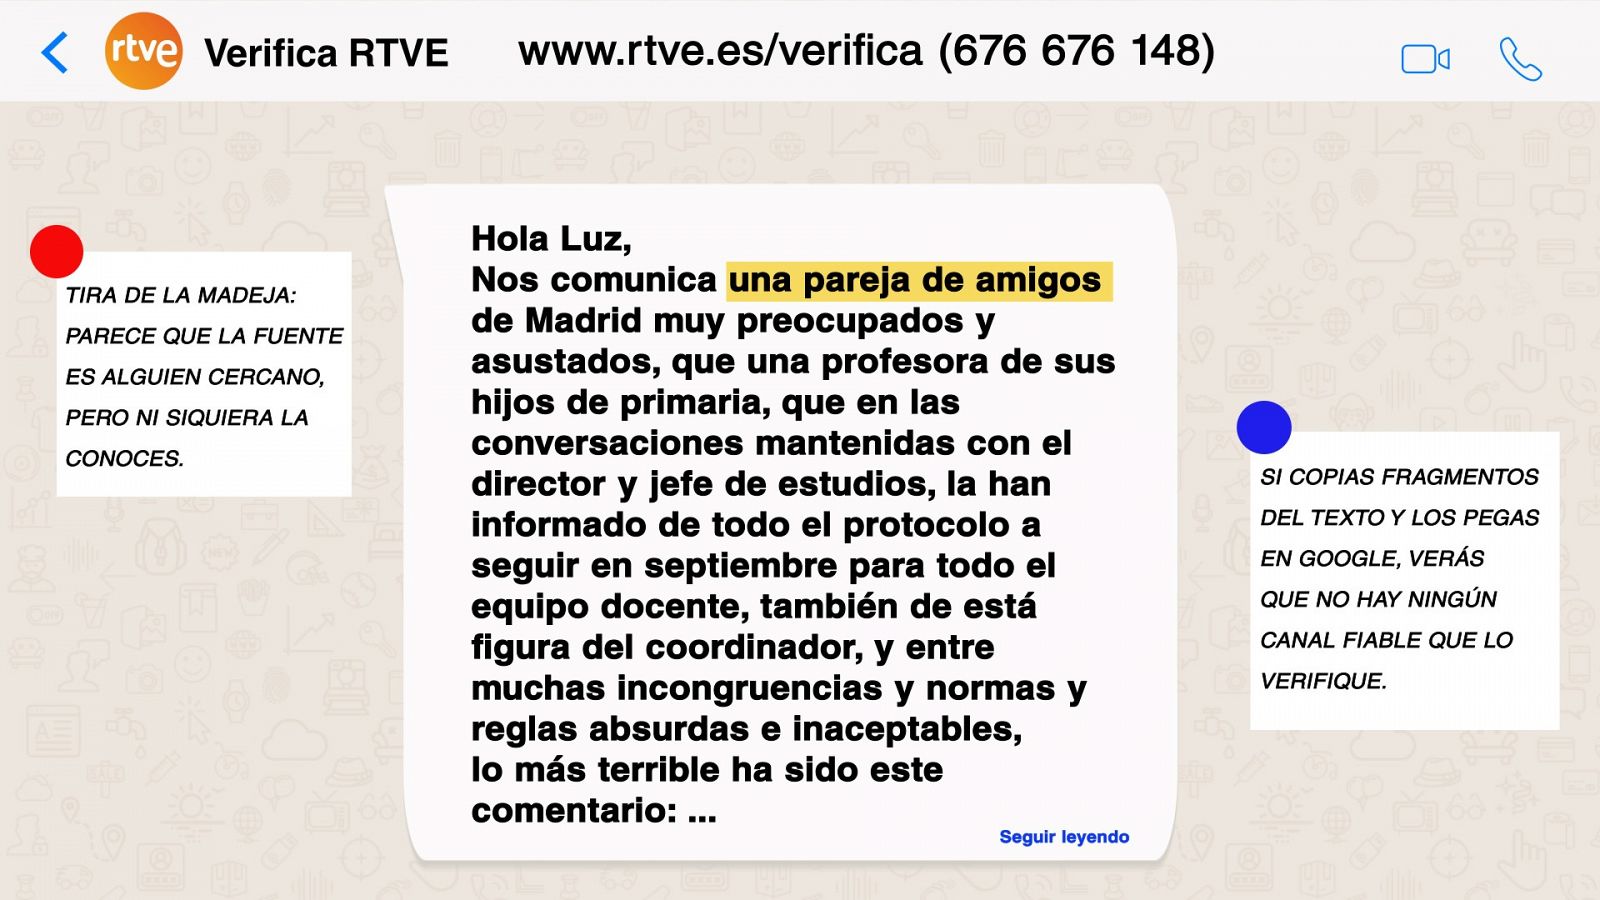 "La habitación del pánico". Un bulo distribuido con la vuelta al cole - RTVE.es